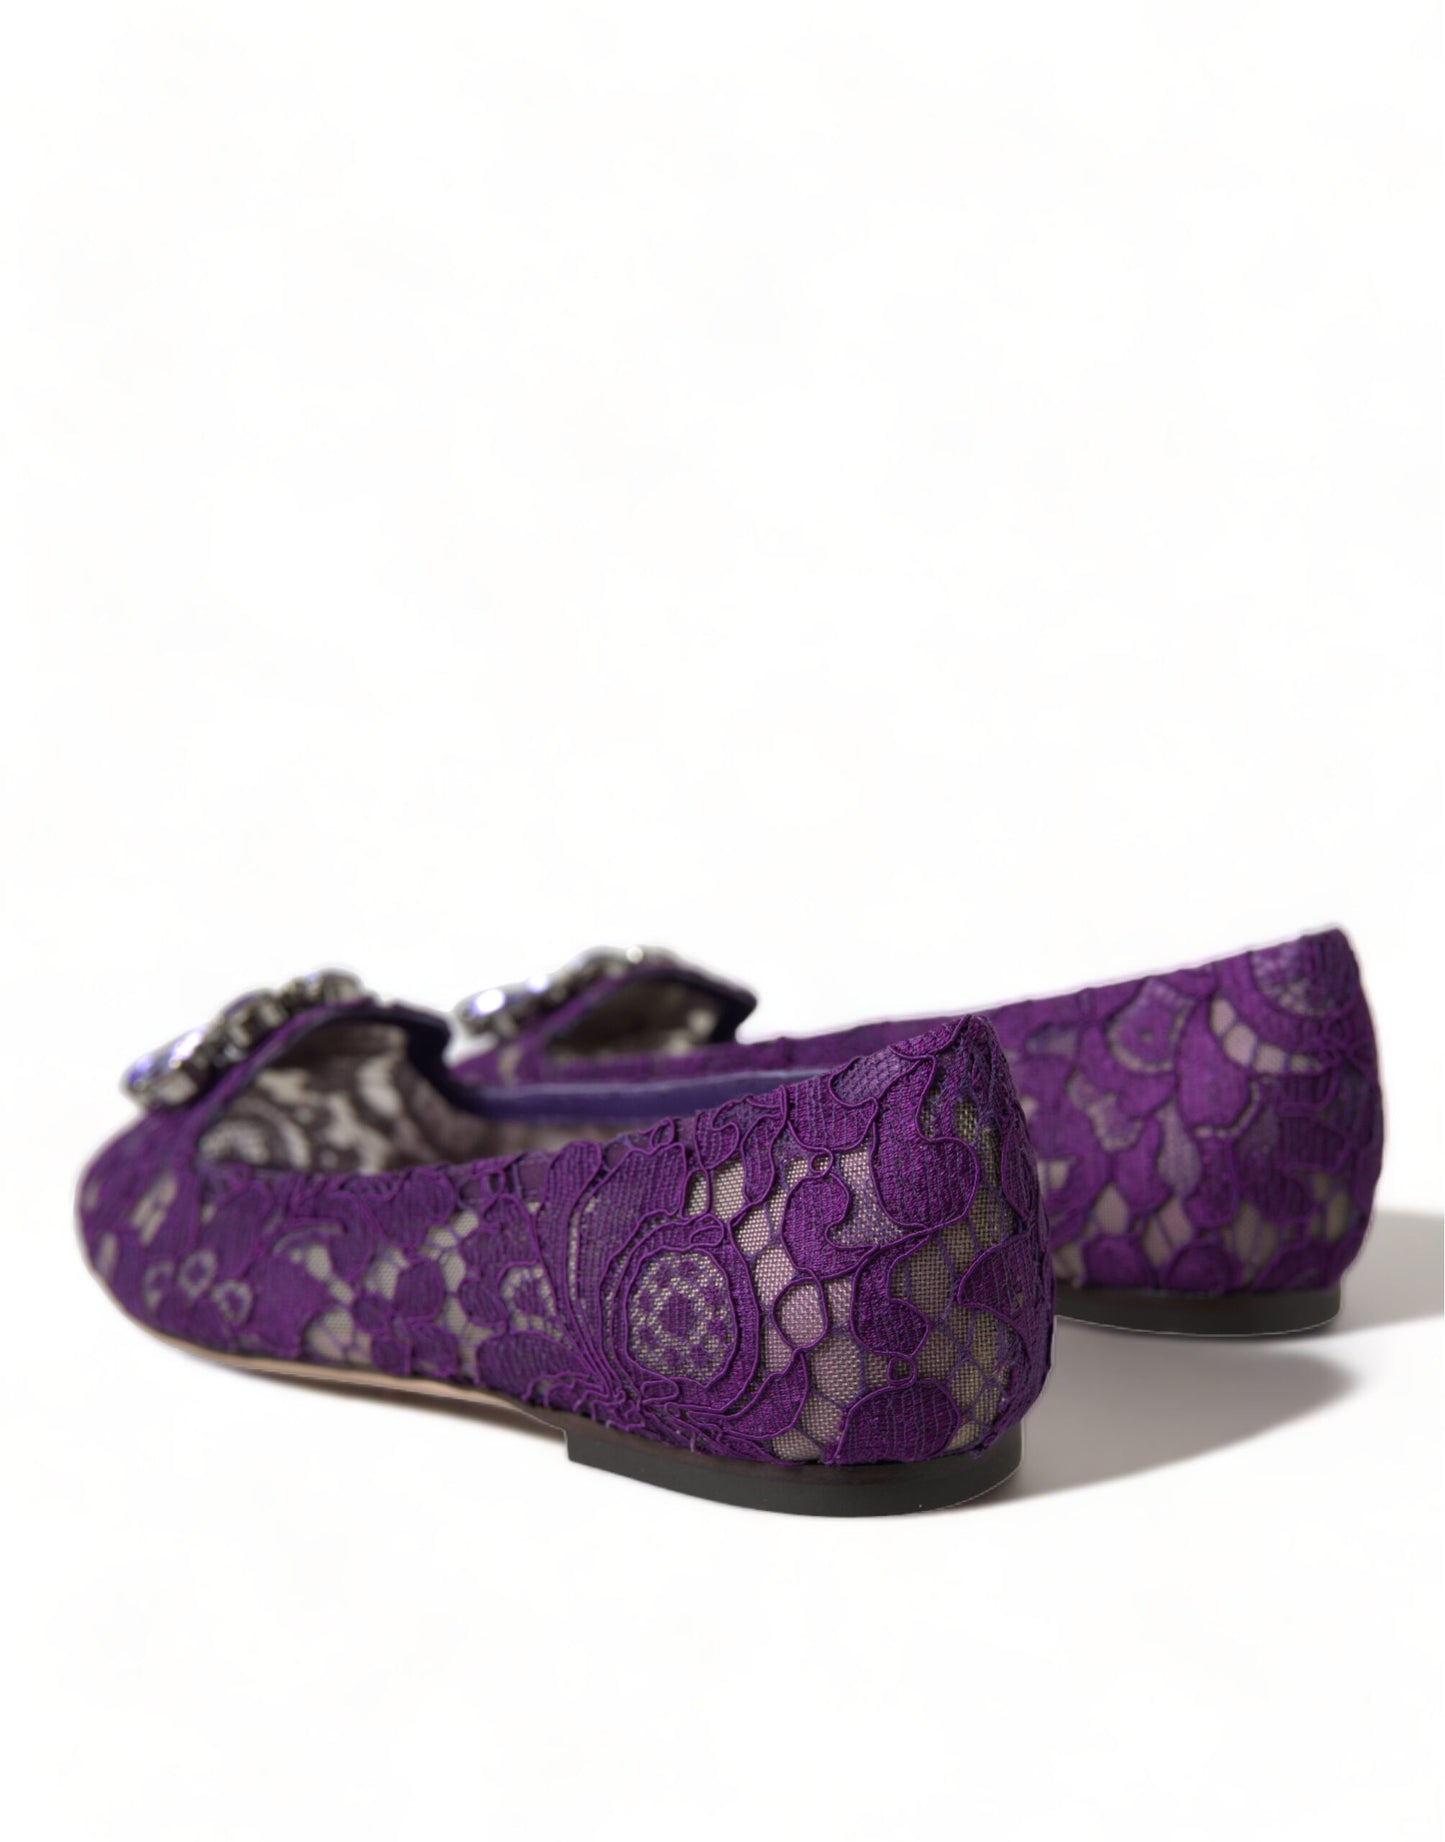 Dolce & Gabbana Purple Vally Taormina Lace Crystals Flats Shoes - DEA STILOSA MILANO